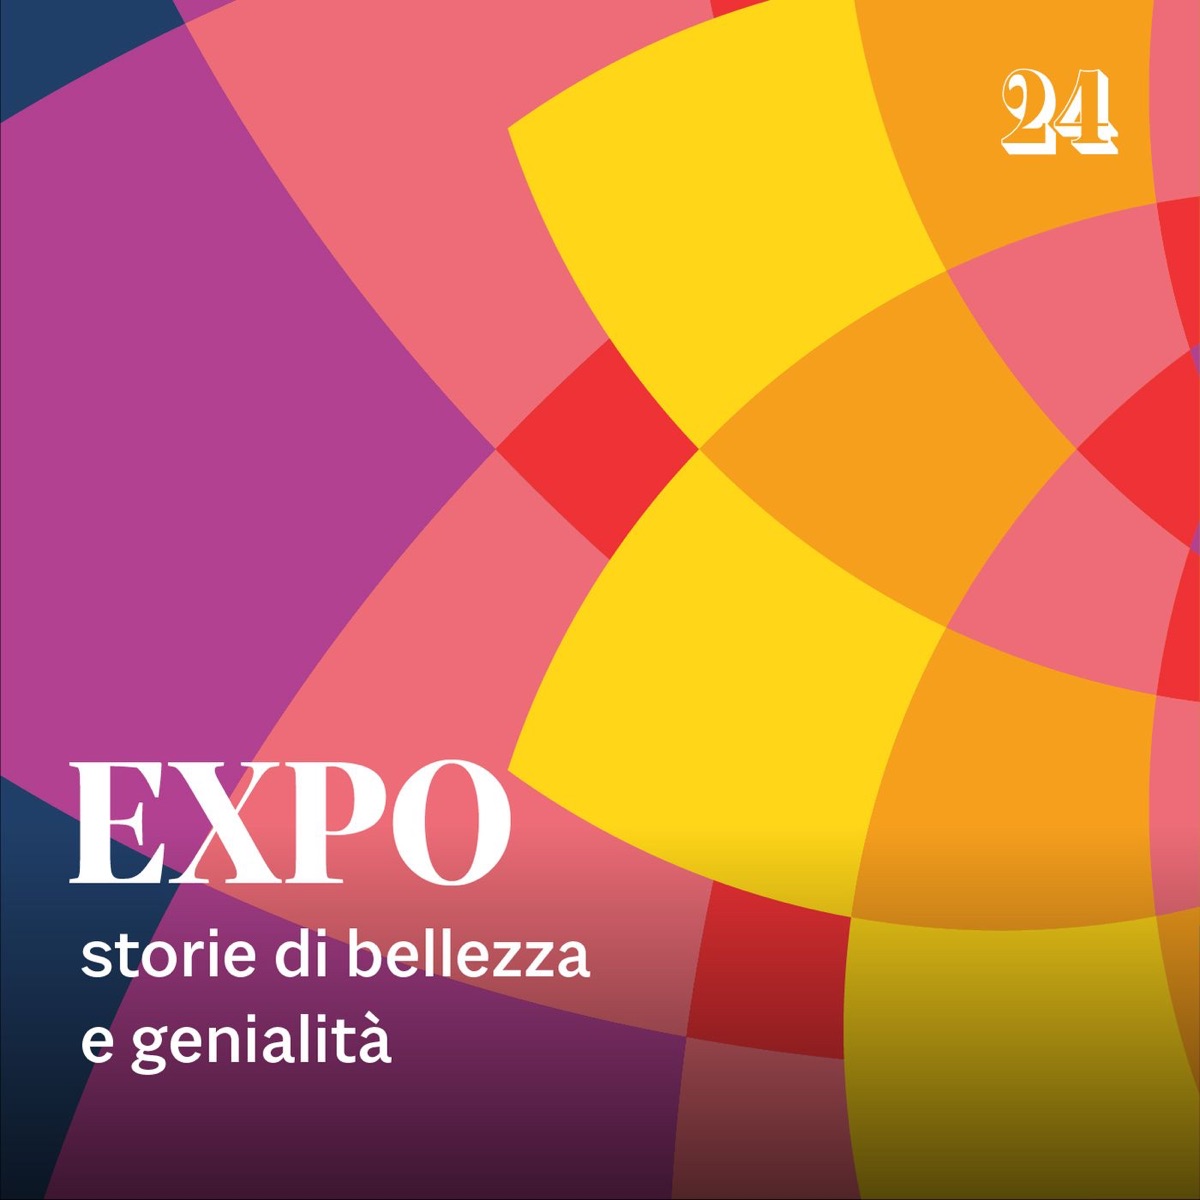 Expo, storie di bellezza e genialità